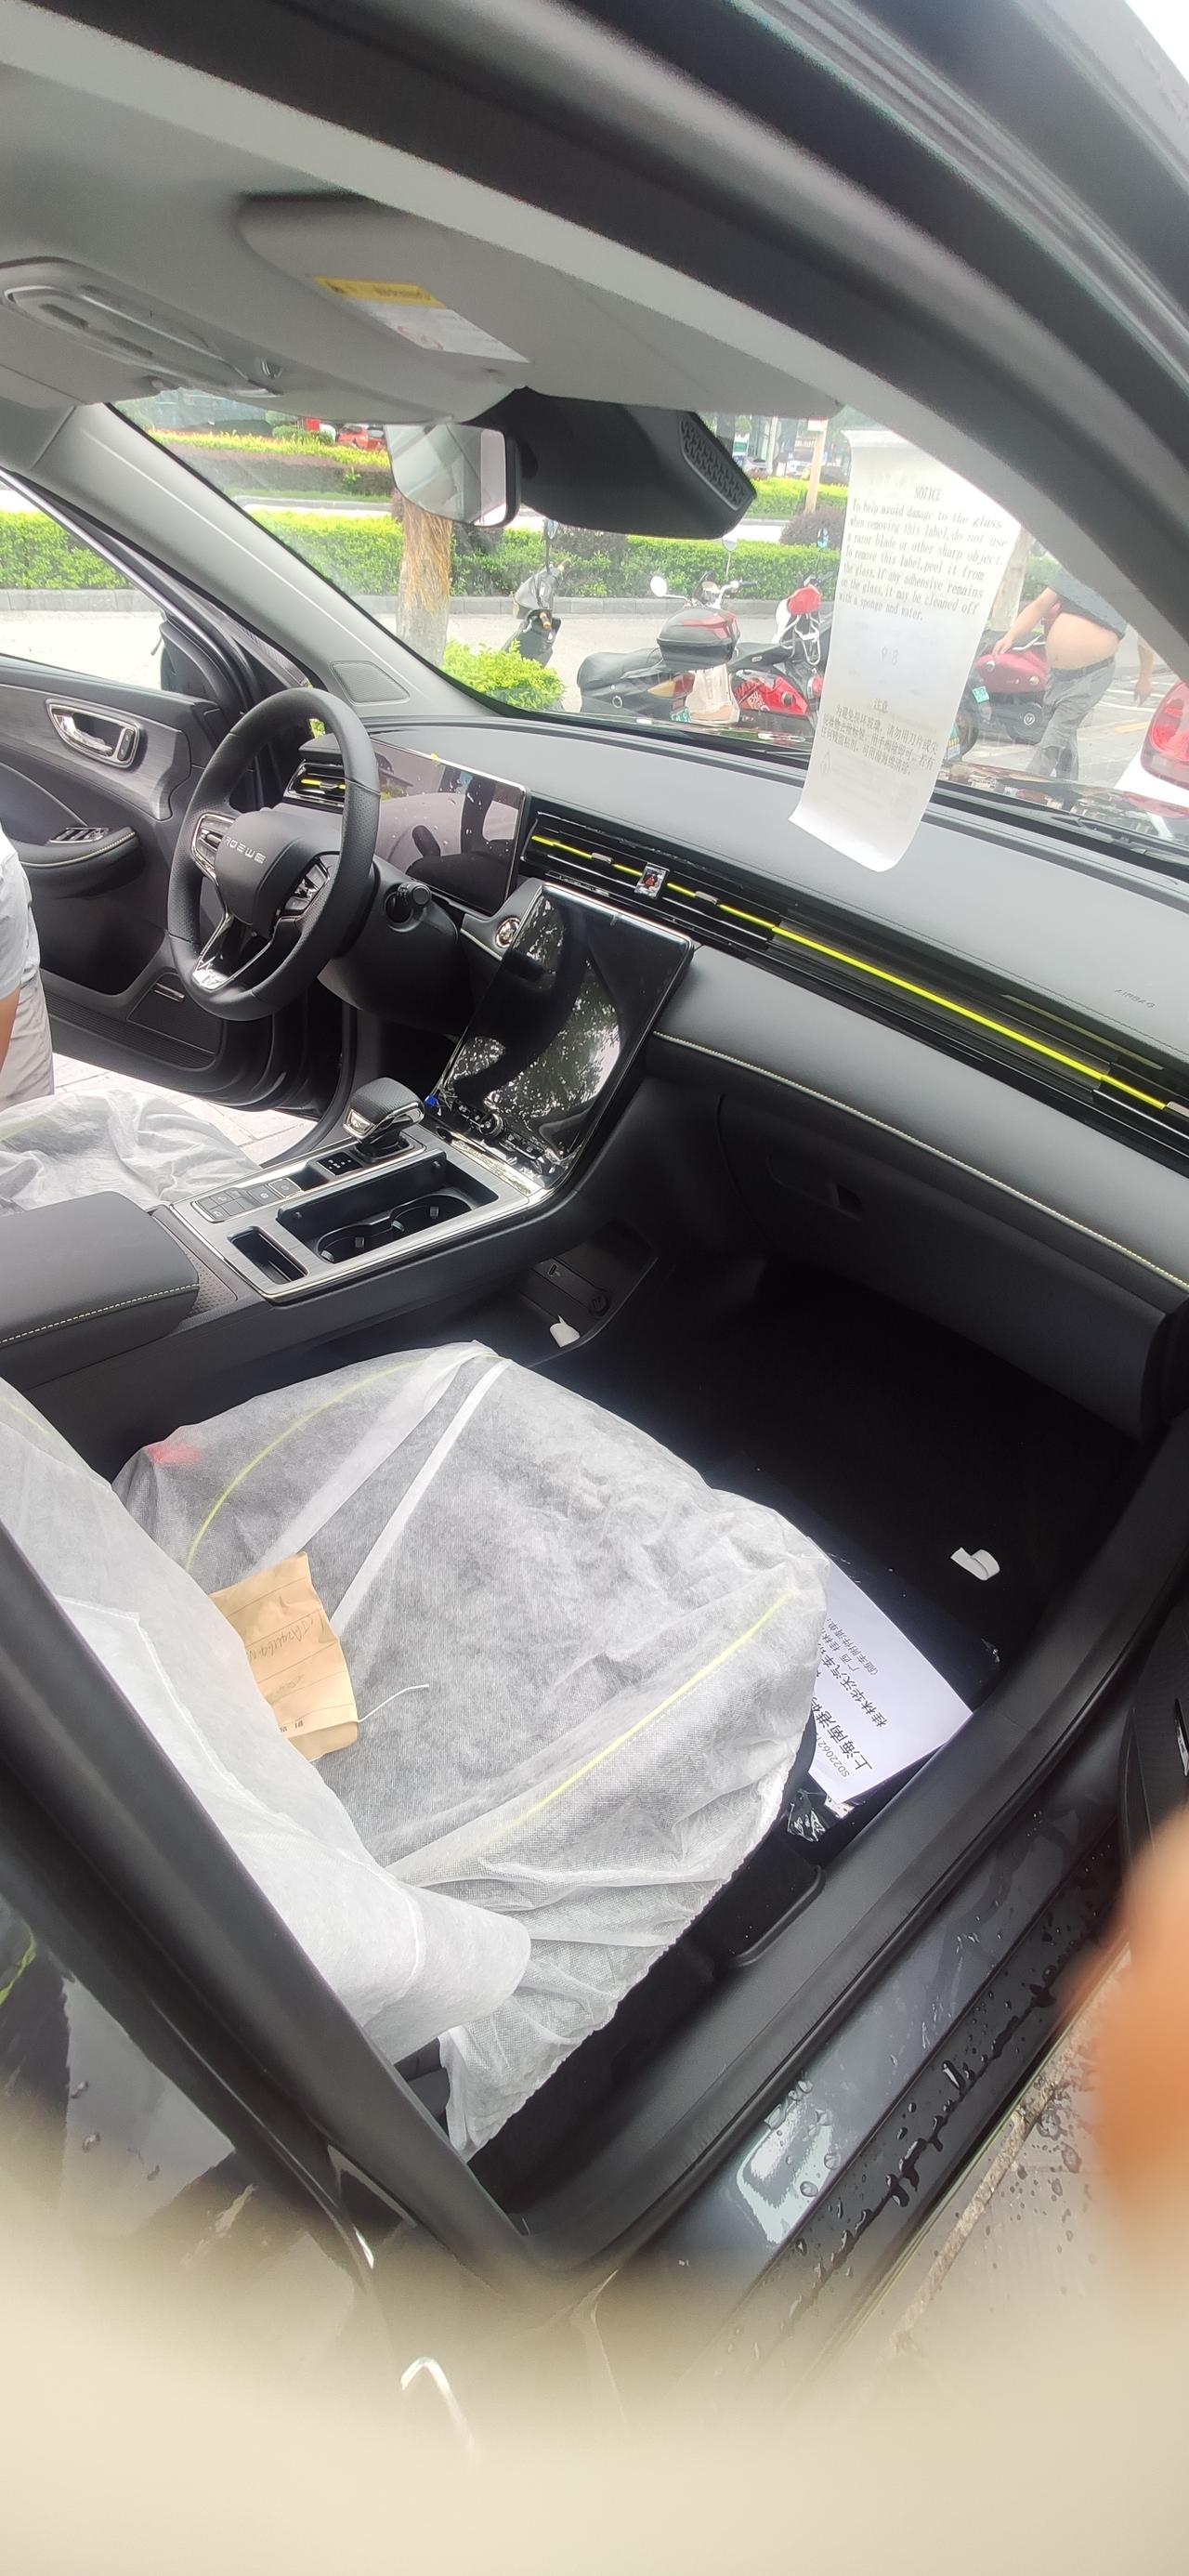 荣威RX5 问下车友们 你们买新车 就是前排有座套膜？  后排都没有啊？ 哪里都没有膜保护的么？ 有得回答下